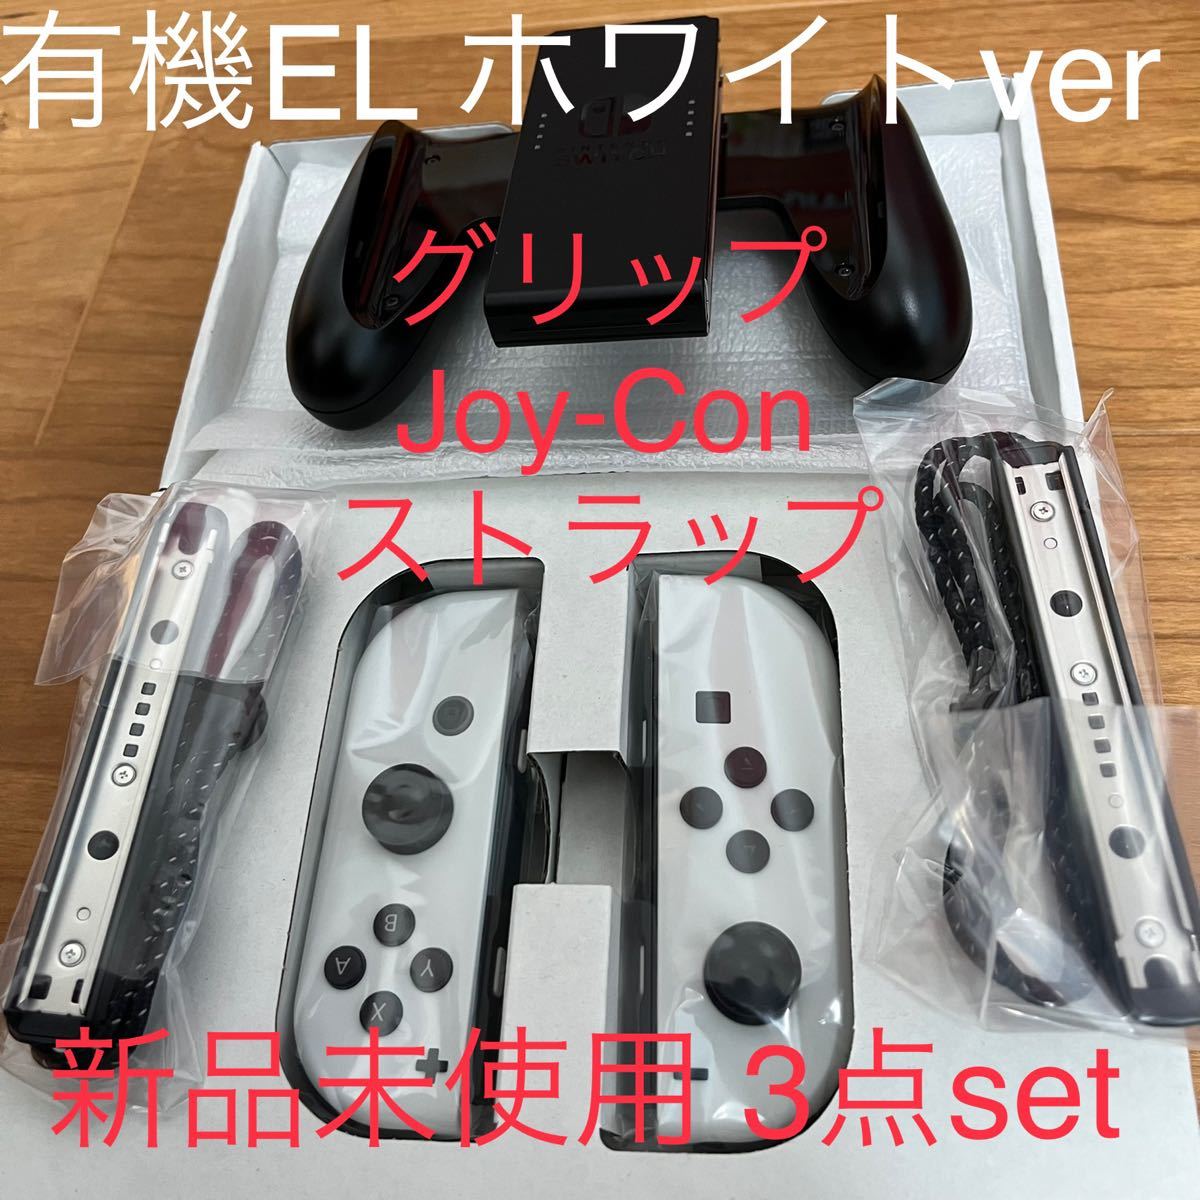 新品未使用 NintendoSwitch Joy-Con (L)(R)セット 有機ELホワイト